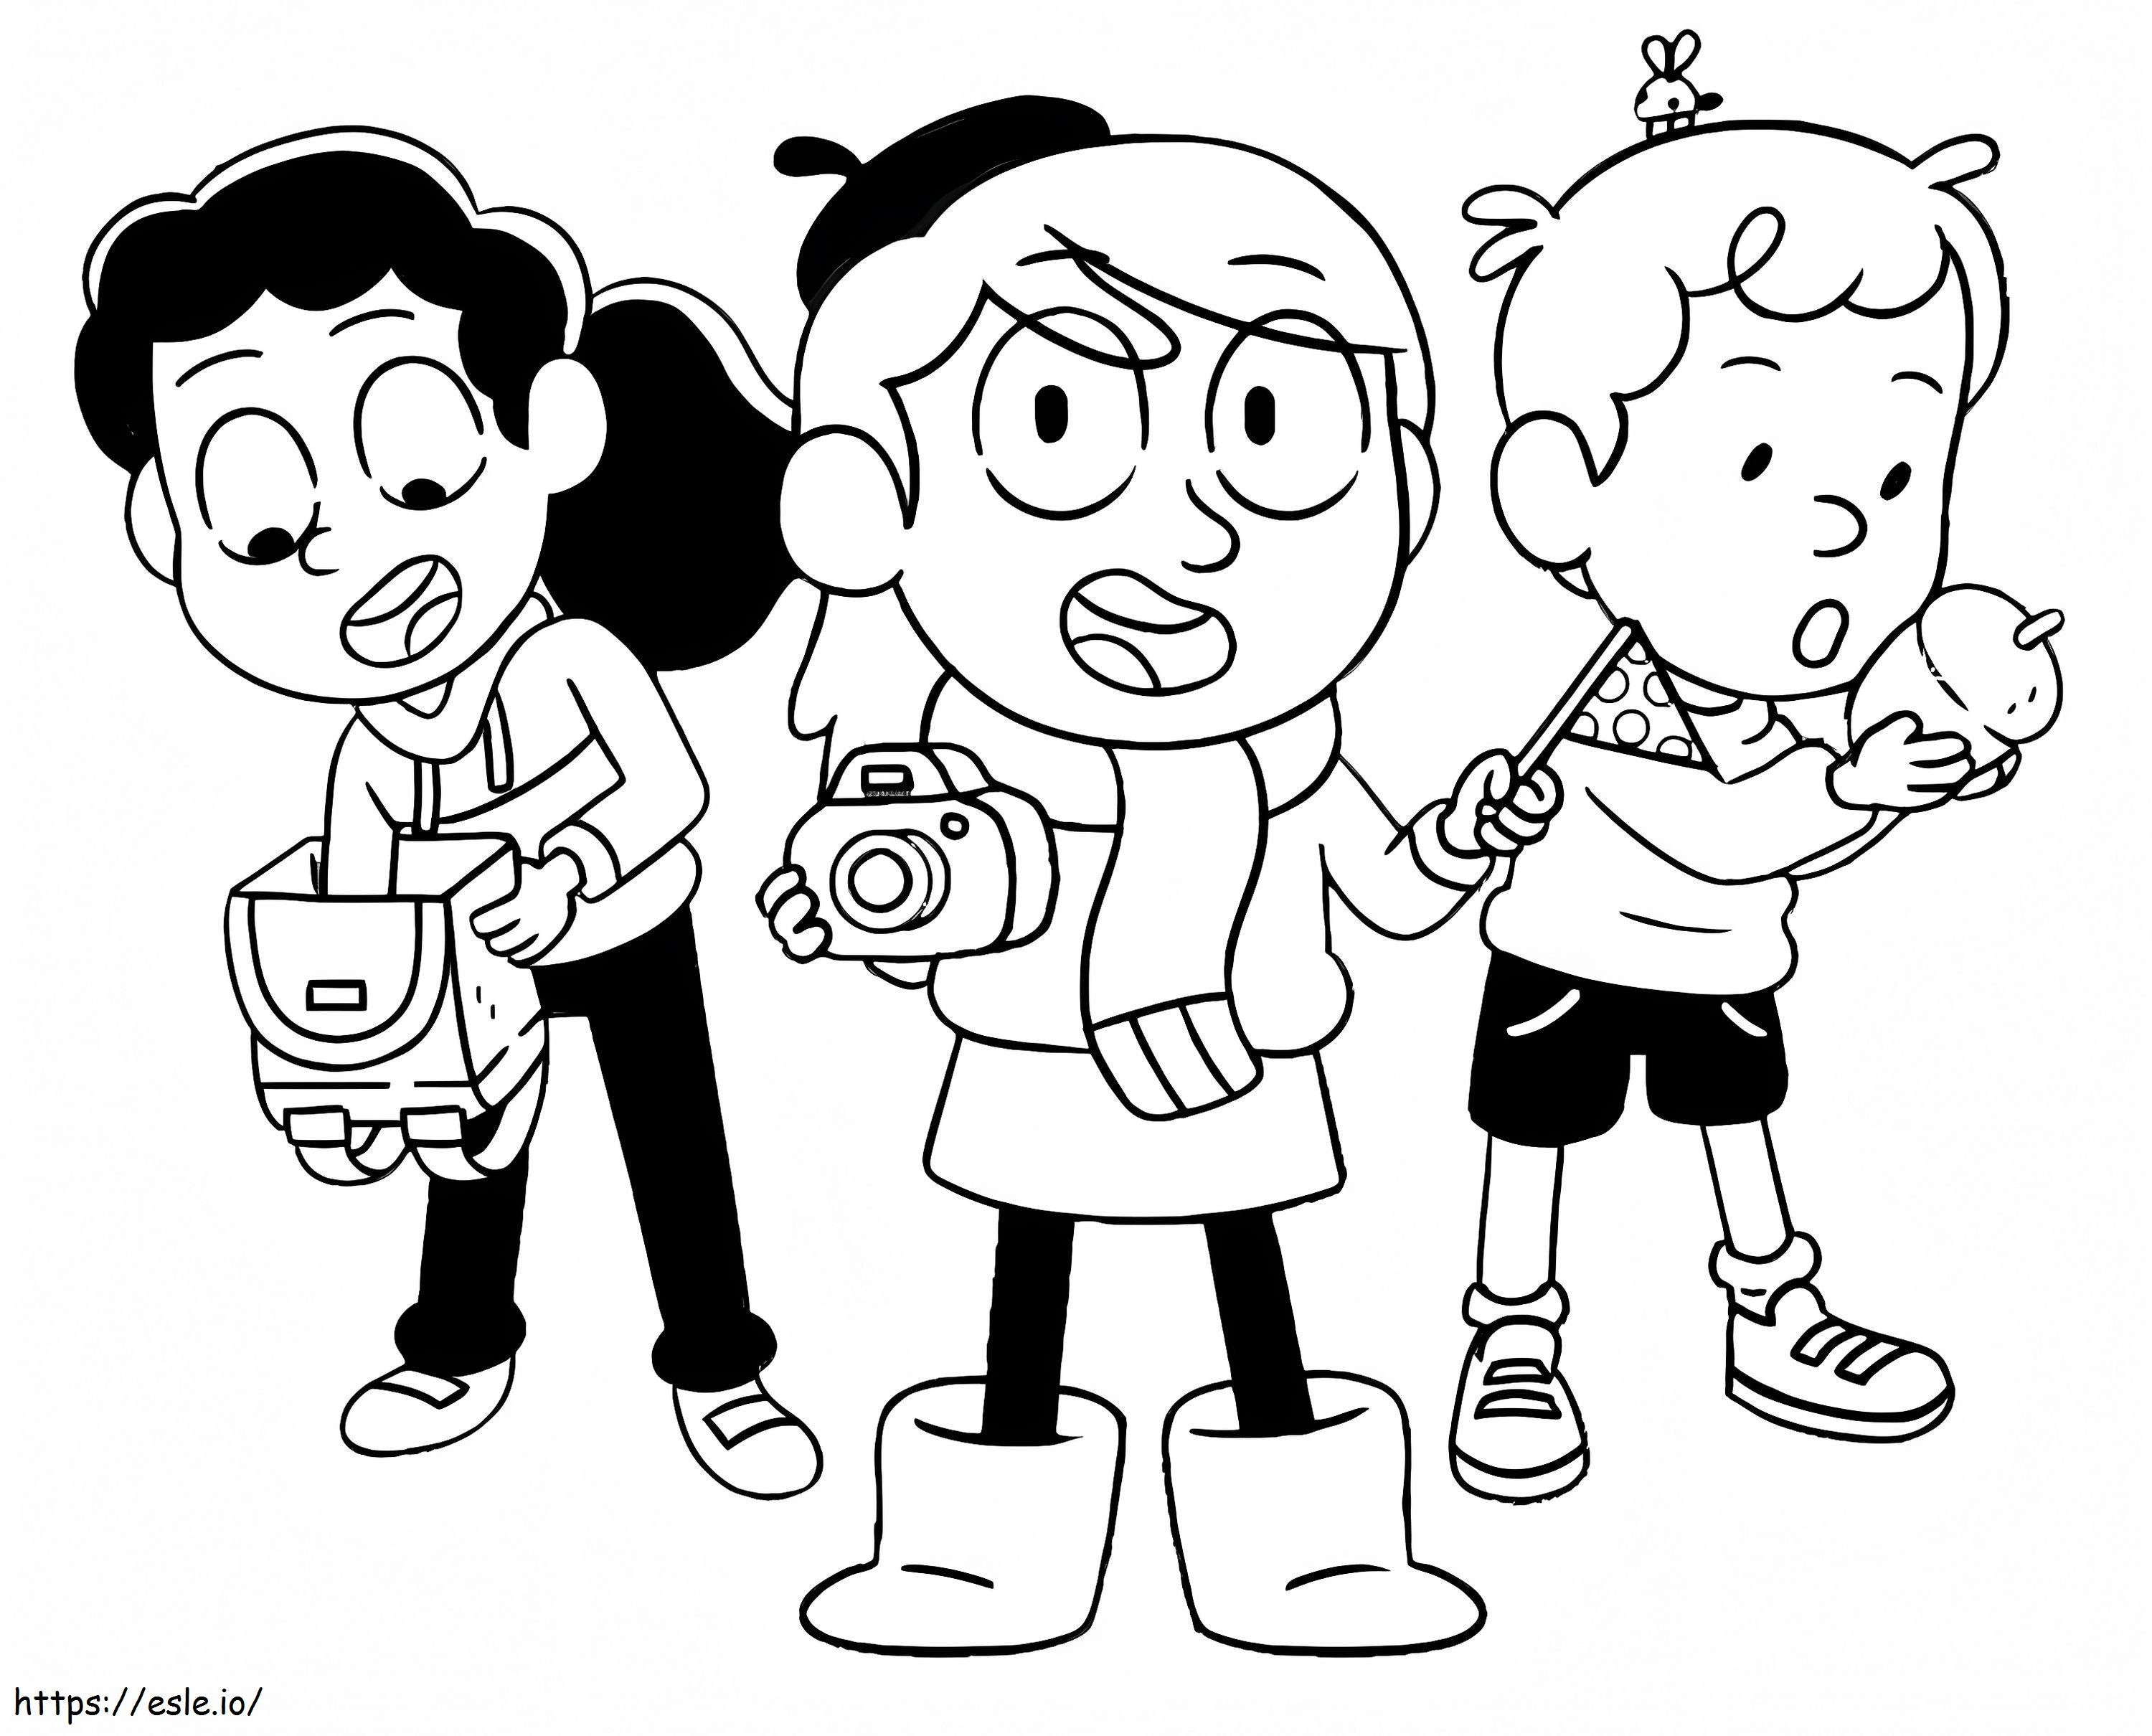 Hilda e seus amigos partem em uma aventura para colorir